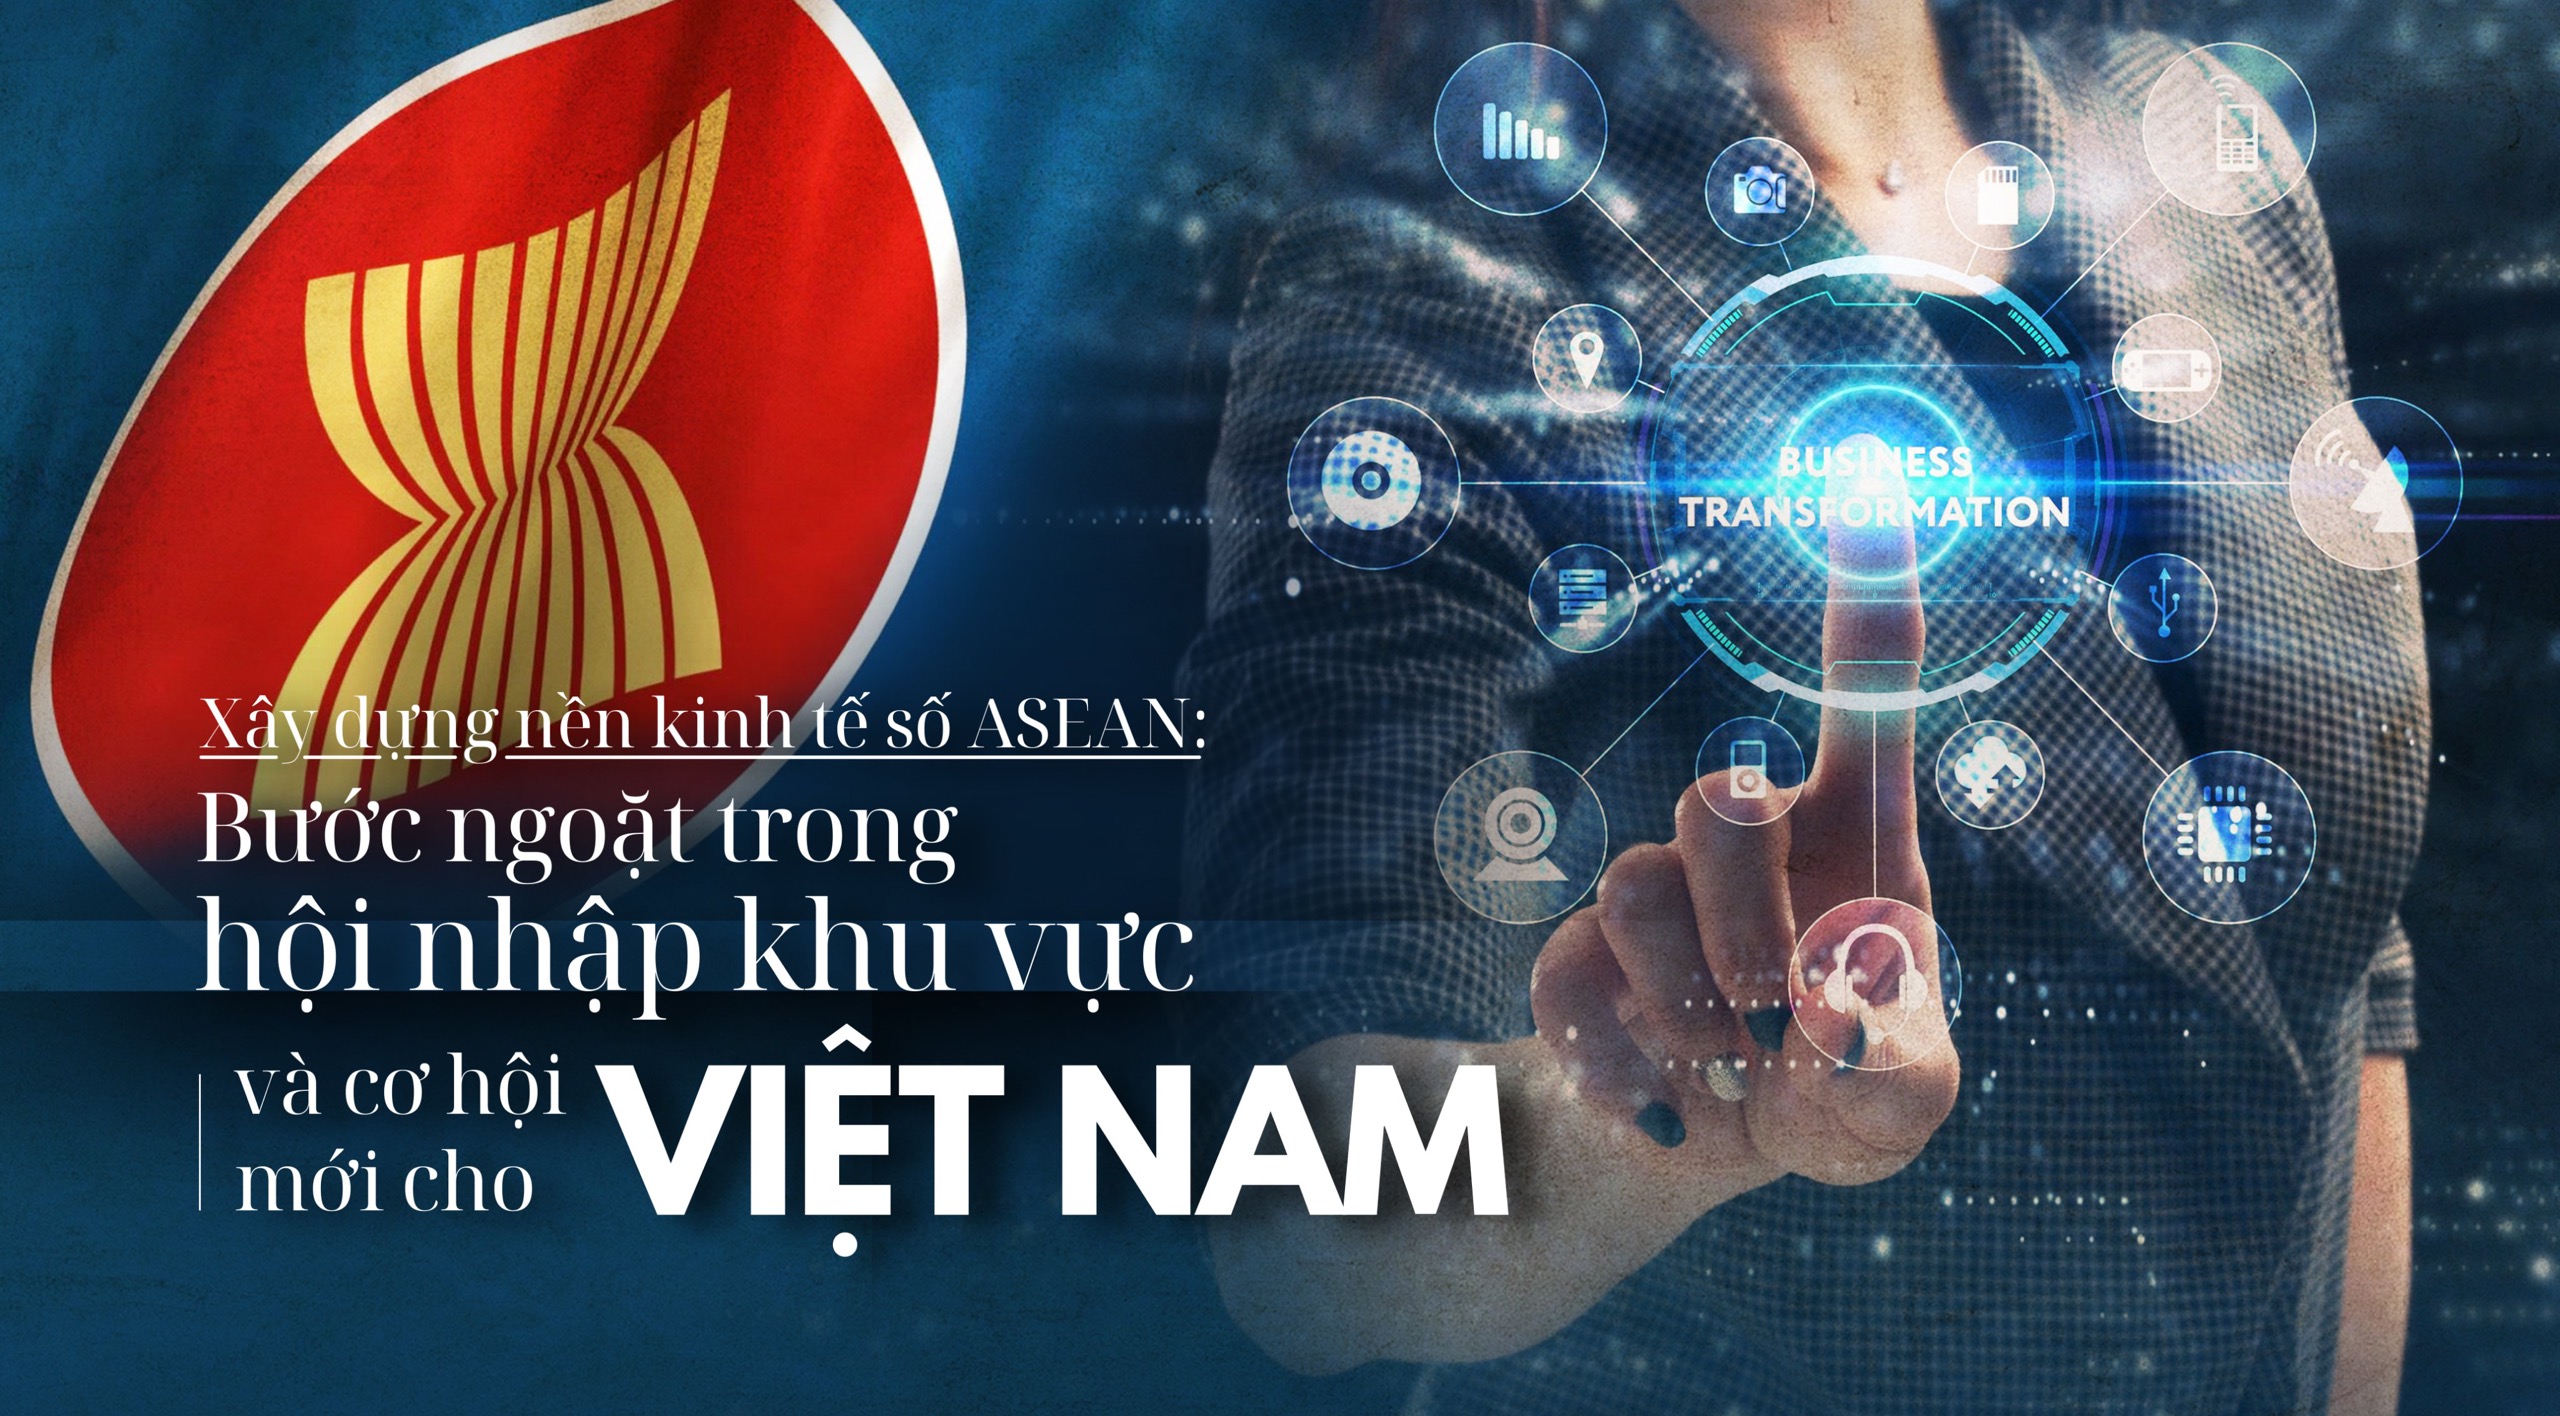 Xây dựng nền kinh tế số ASEAN: Bước ngoặt trong hội nhập khu vực, cơ hội mới cho Việt Nam